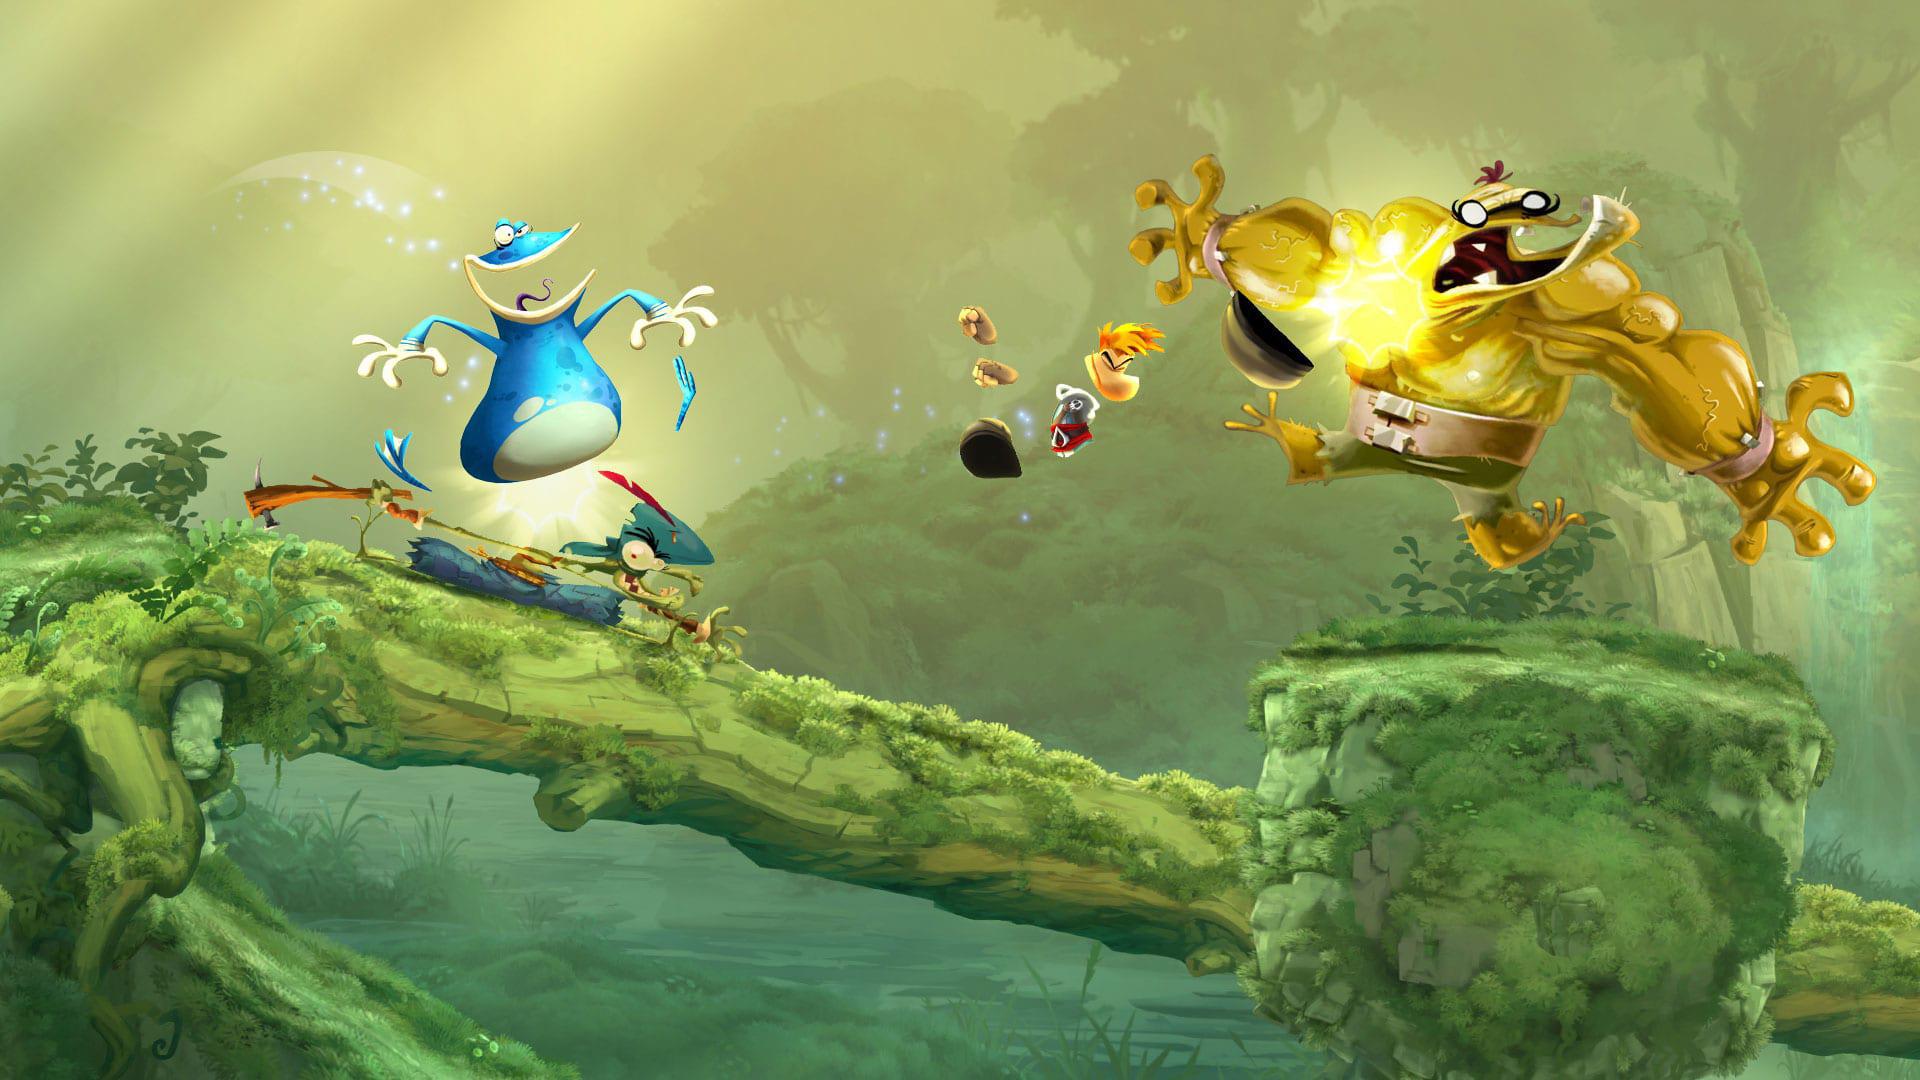 Jogo Rayman Legends Retrocompativel Para Xbox 360 E One em